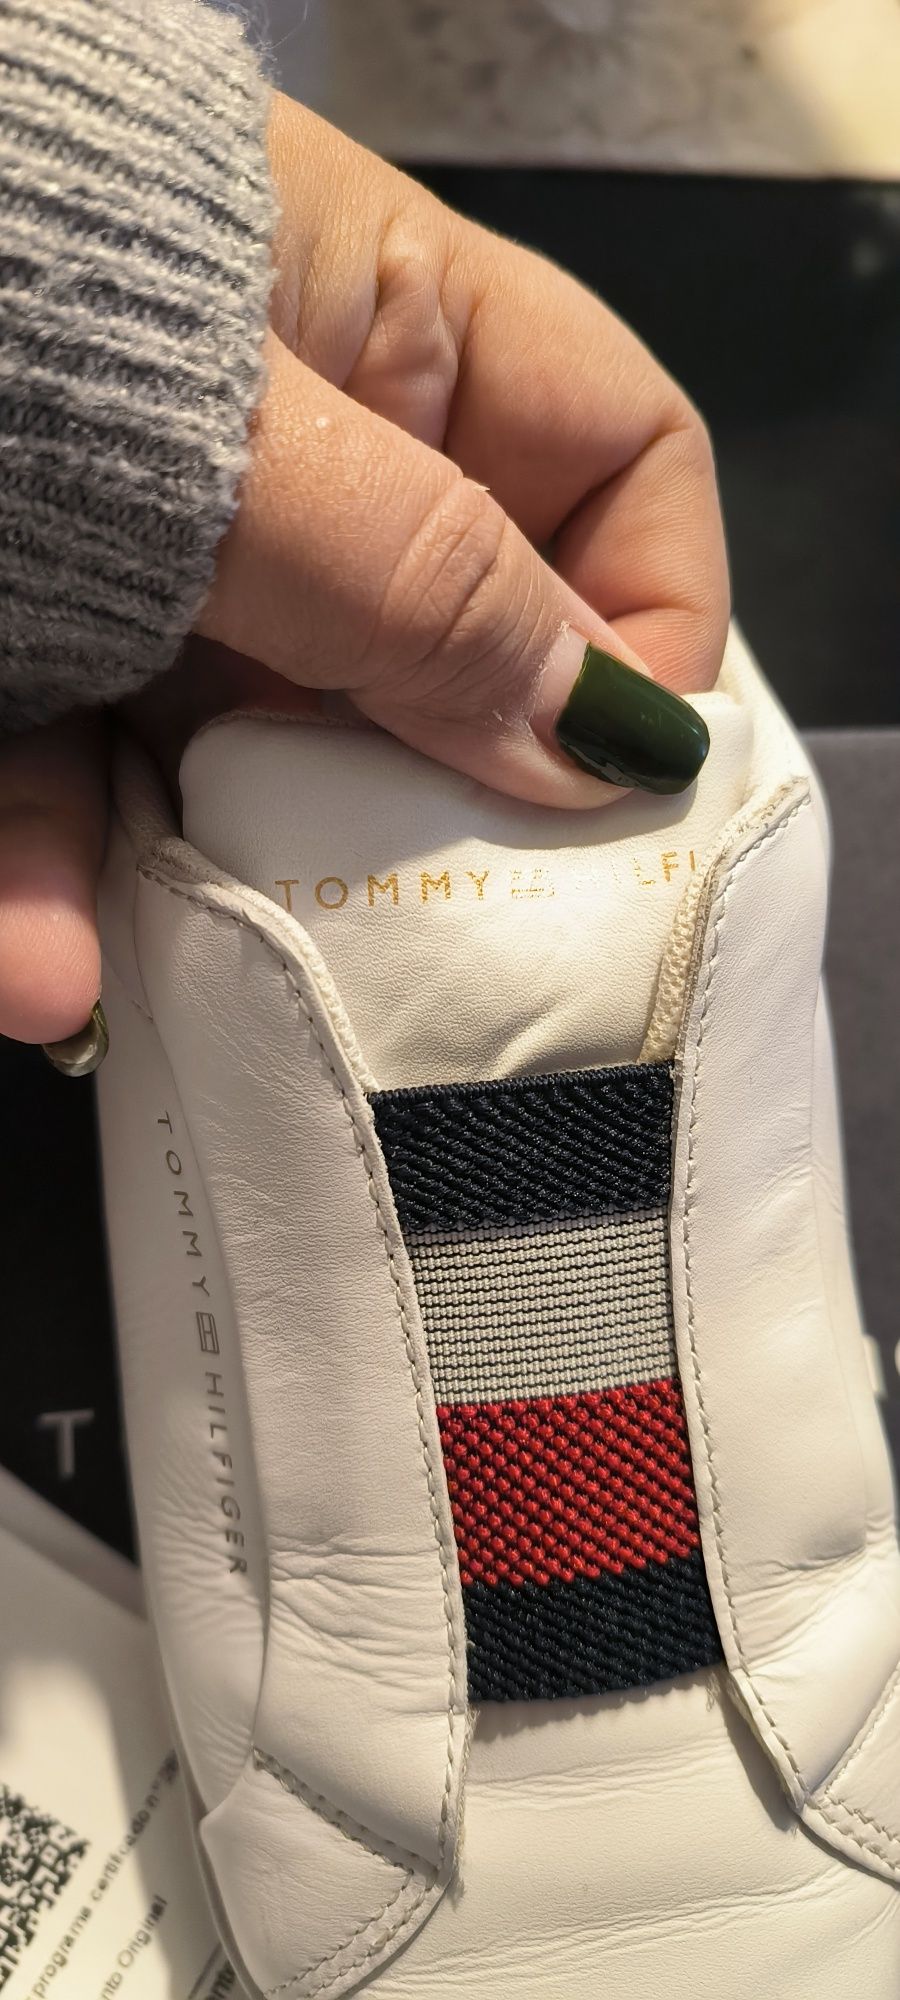 Sapatilhas Tommy originais